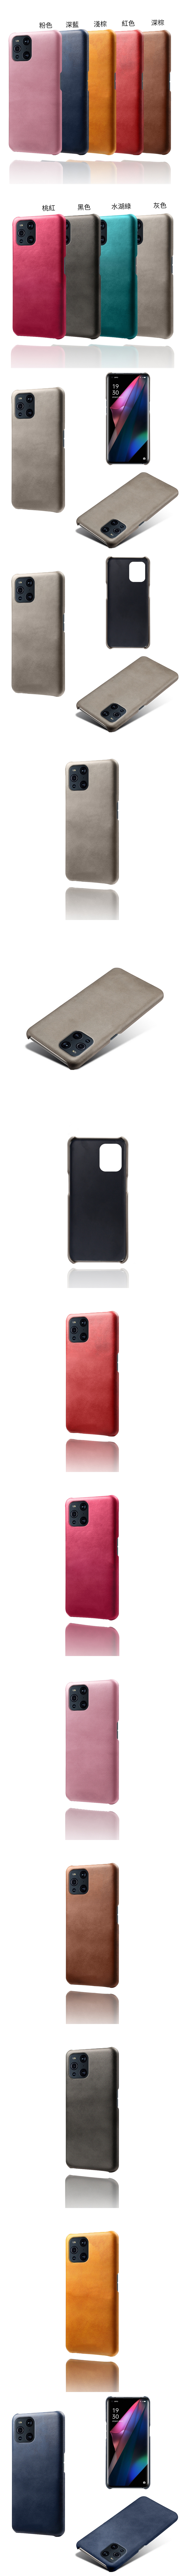 OPPO Find X3 Pro 皮革保護殼(PLAIN) - 牛皮仿真皮紋單色背蓋素色多色手機殼保護套手機套